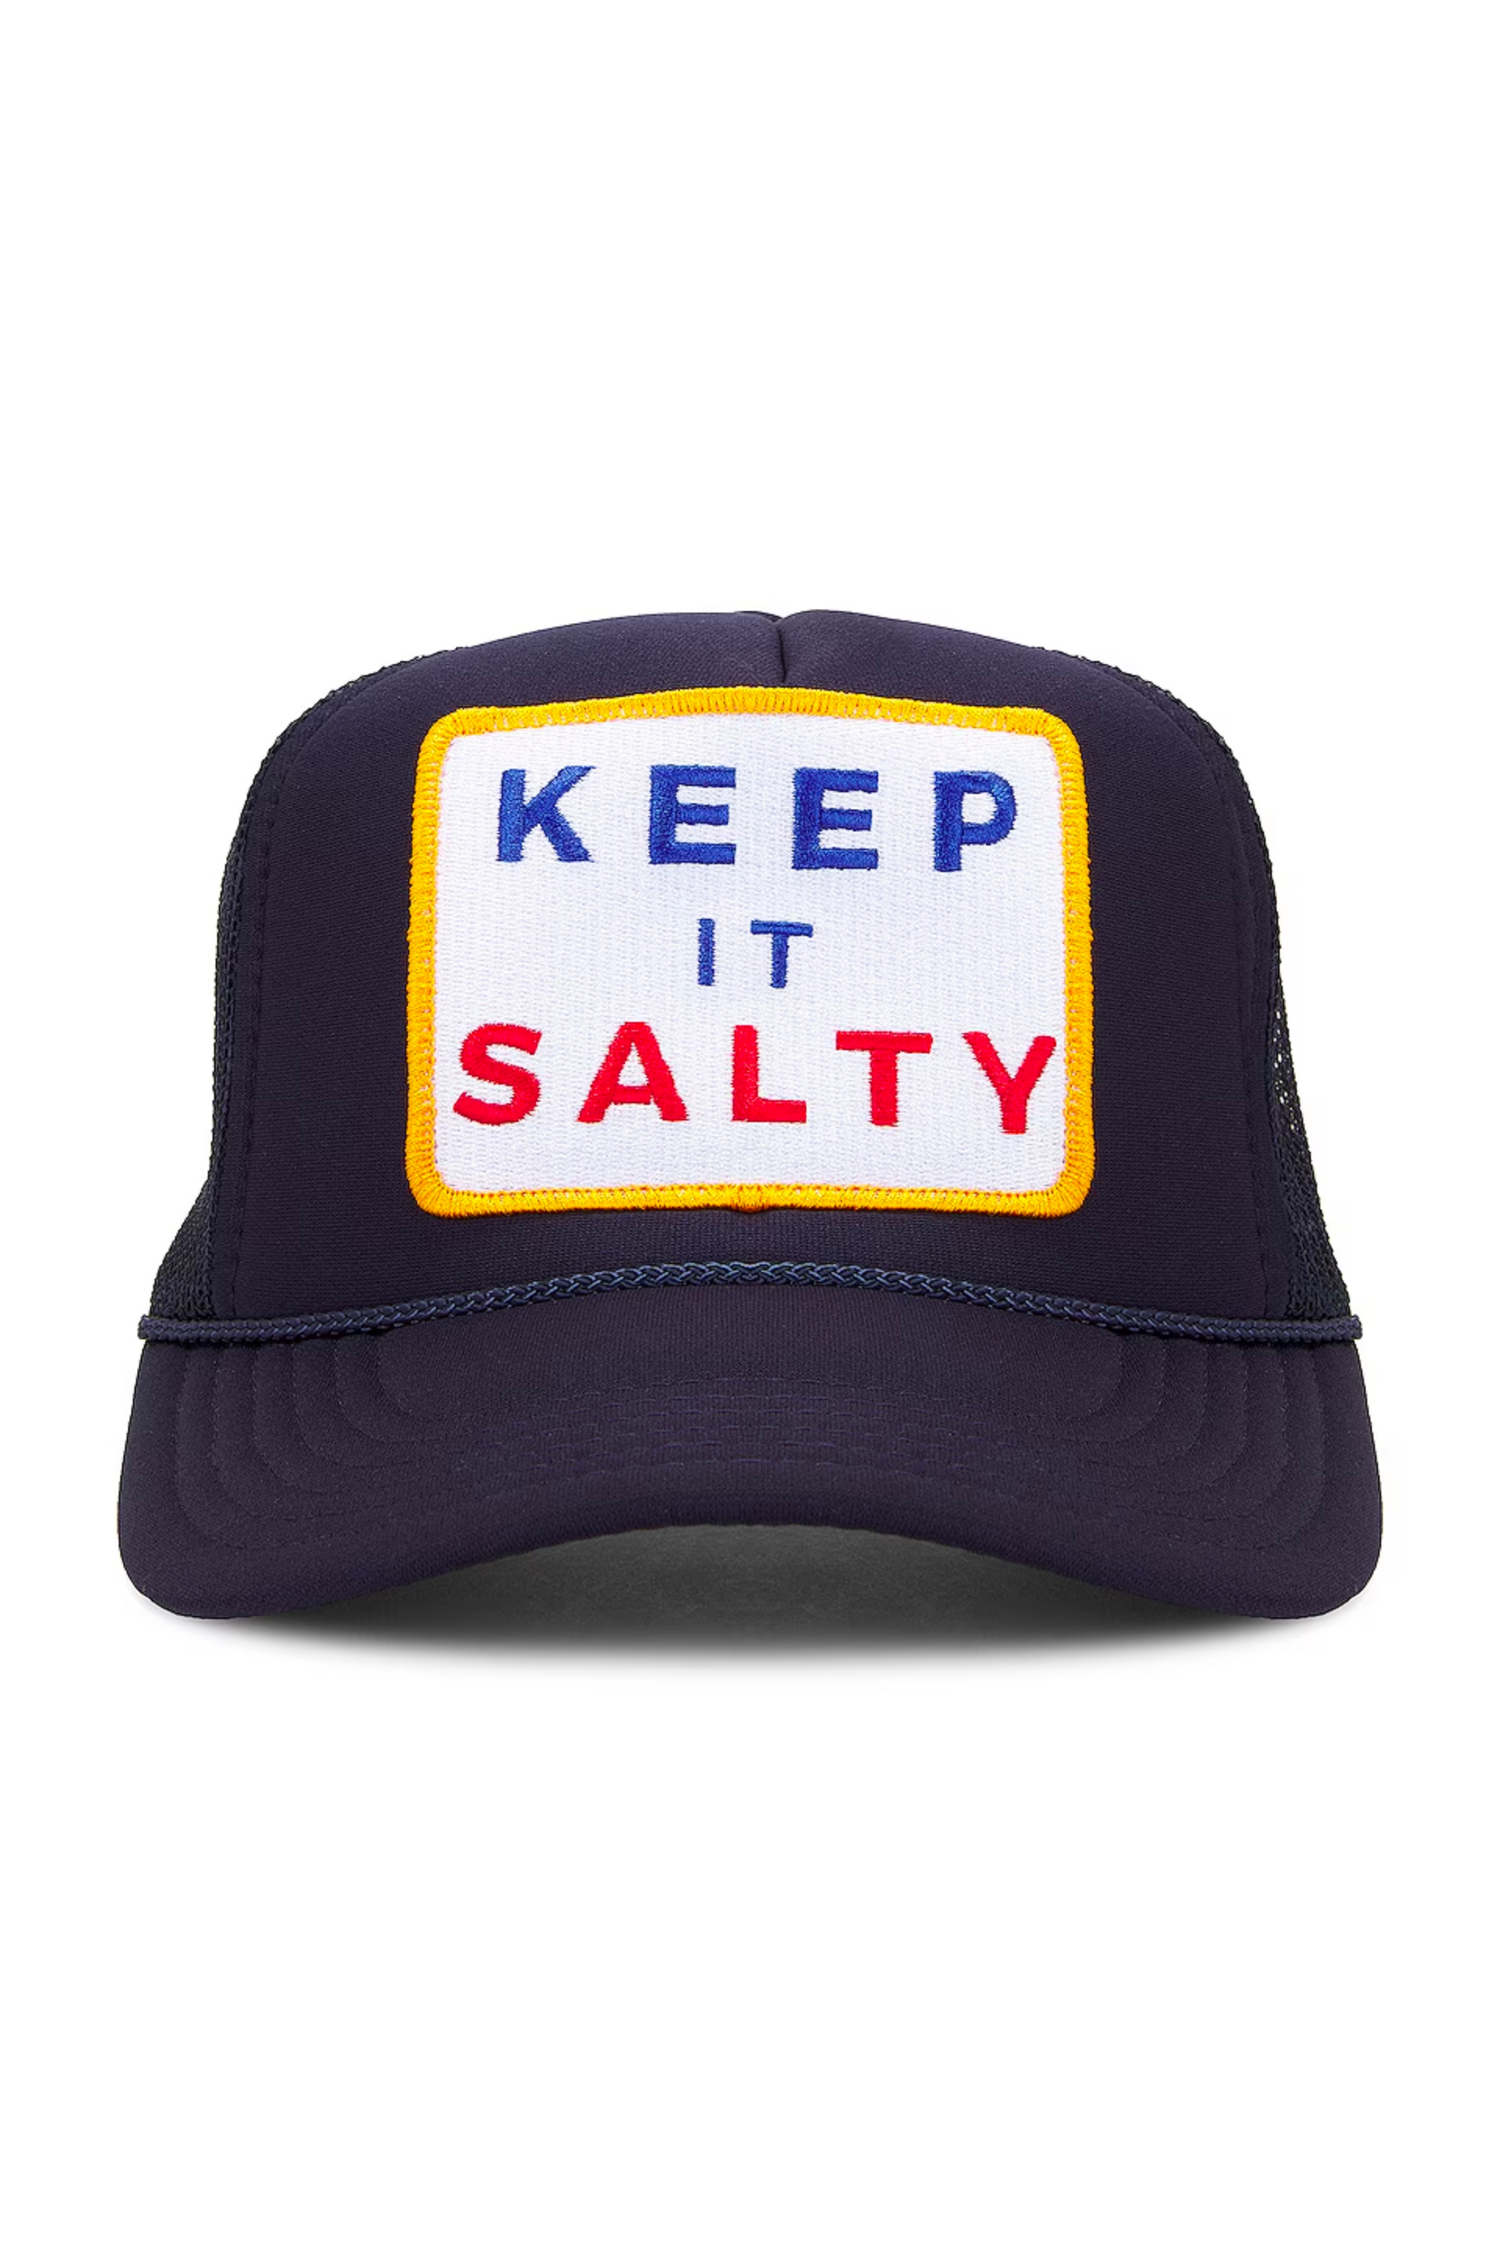 Keep It Salty Trucker Hat in Navy